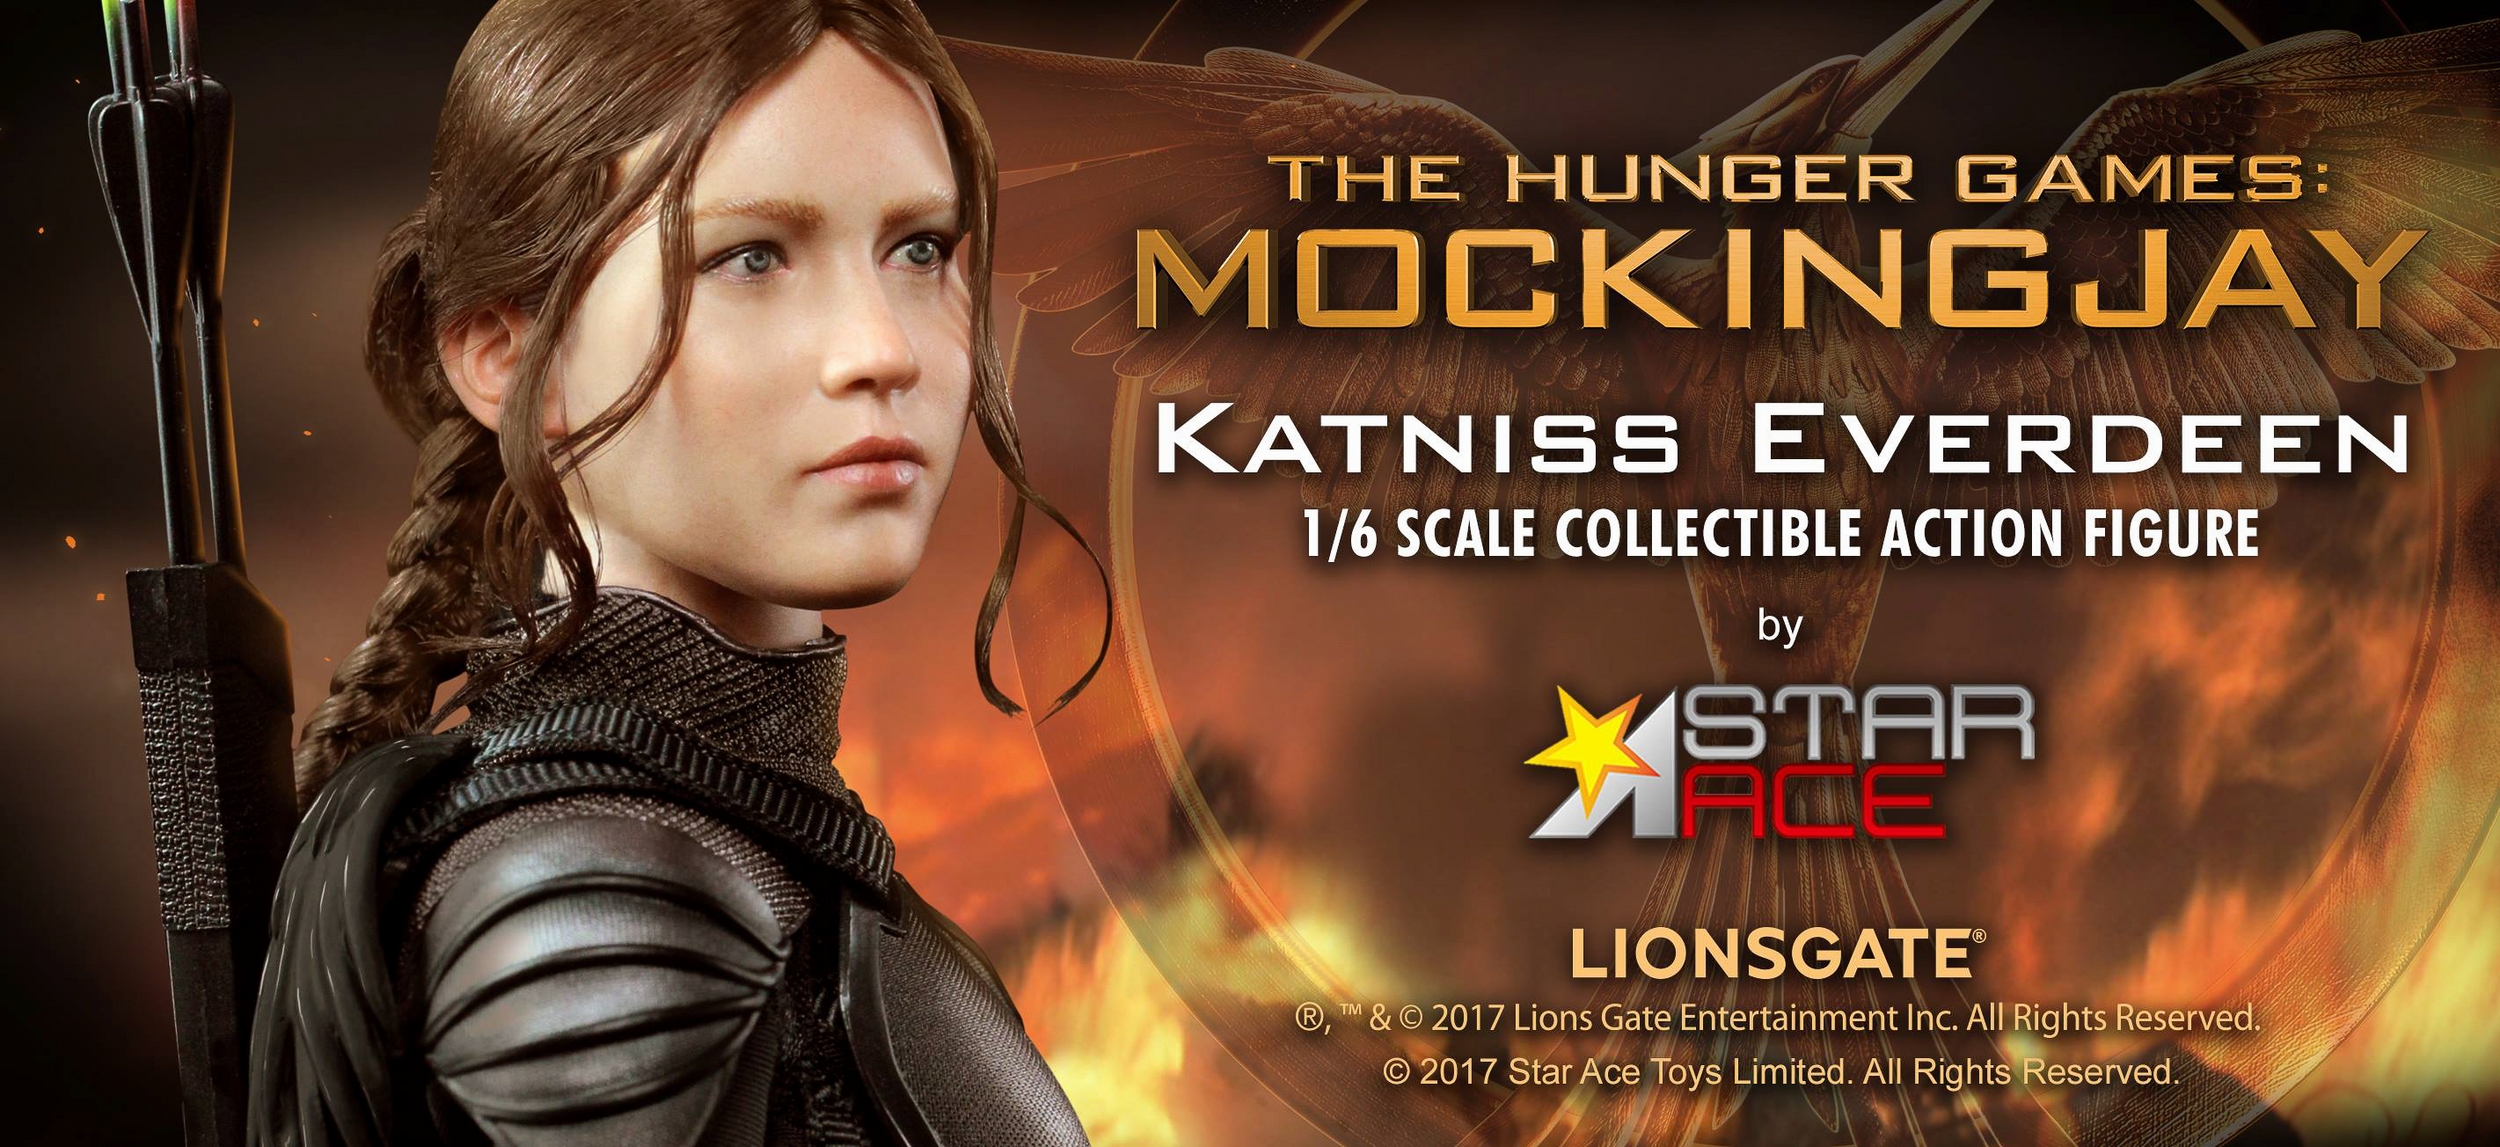 Star-Ace-Toys-Ltd-Katniss-Everdeen-Mockingjay-001.jpg